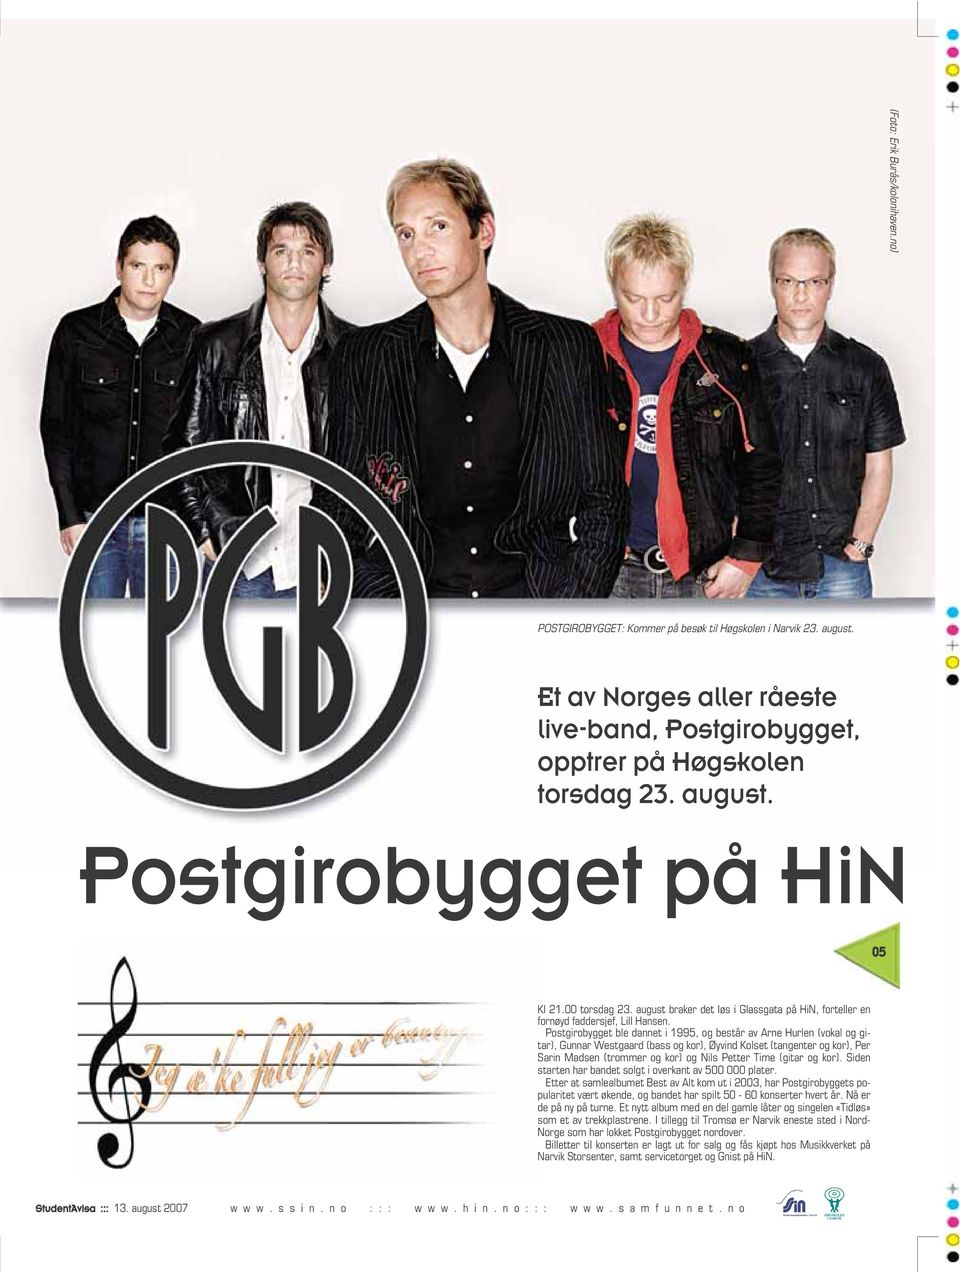 Postgirobygget ble dannet i 1995, og består av Arne Hurlen (vokal og gitar), Gunnar Westgaard (bass og kor), Øyvind Kolset (tangenter og kor), Per Sarin Madsen (trommer og kor) og Nils Petter Time